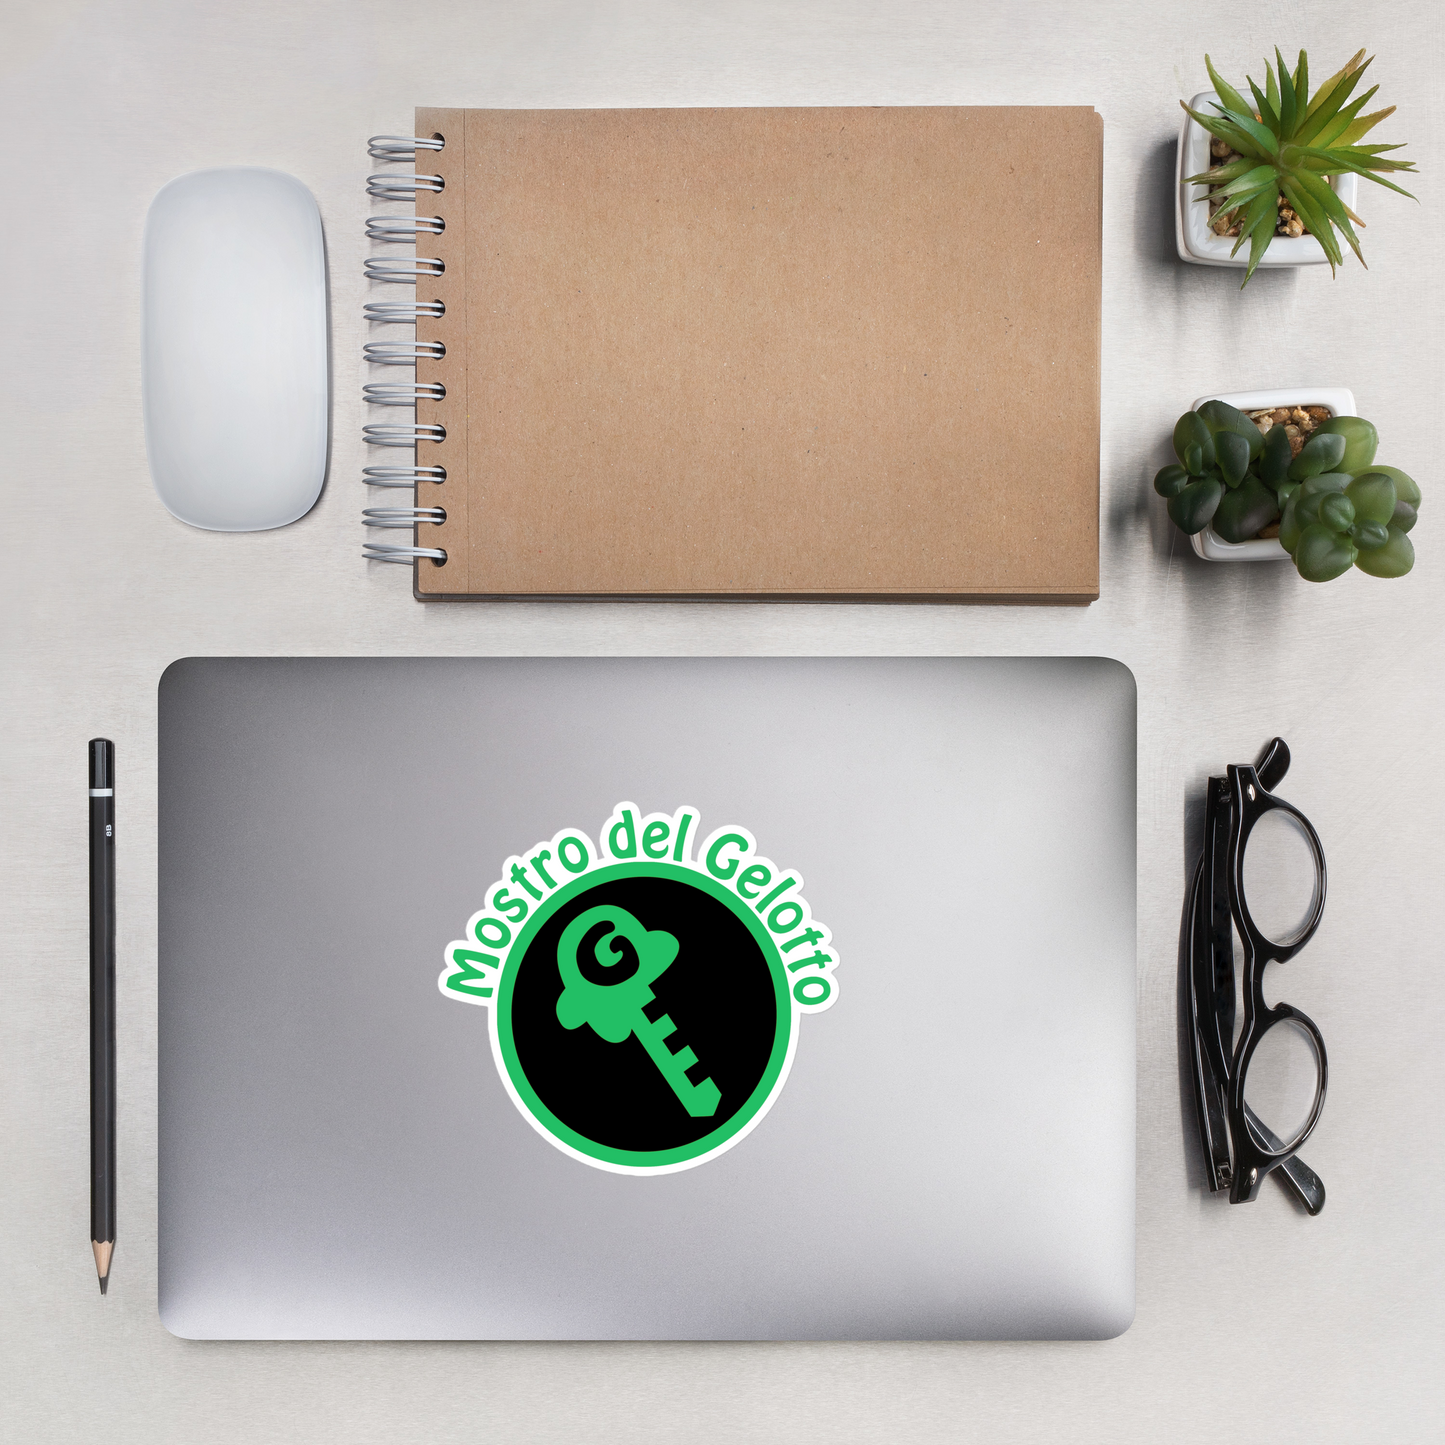 Mostro del Gelotto / GKEY Bubble-free stickers (green and black logo)